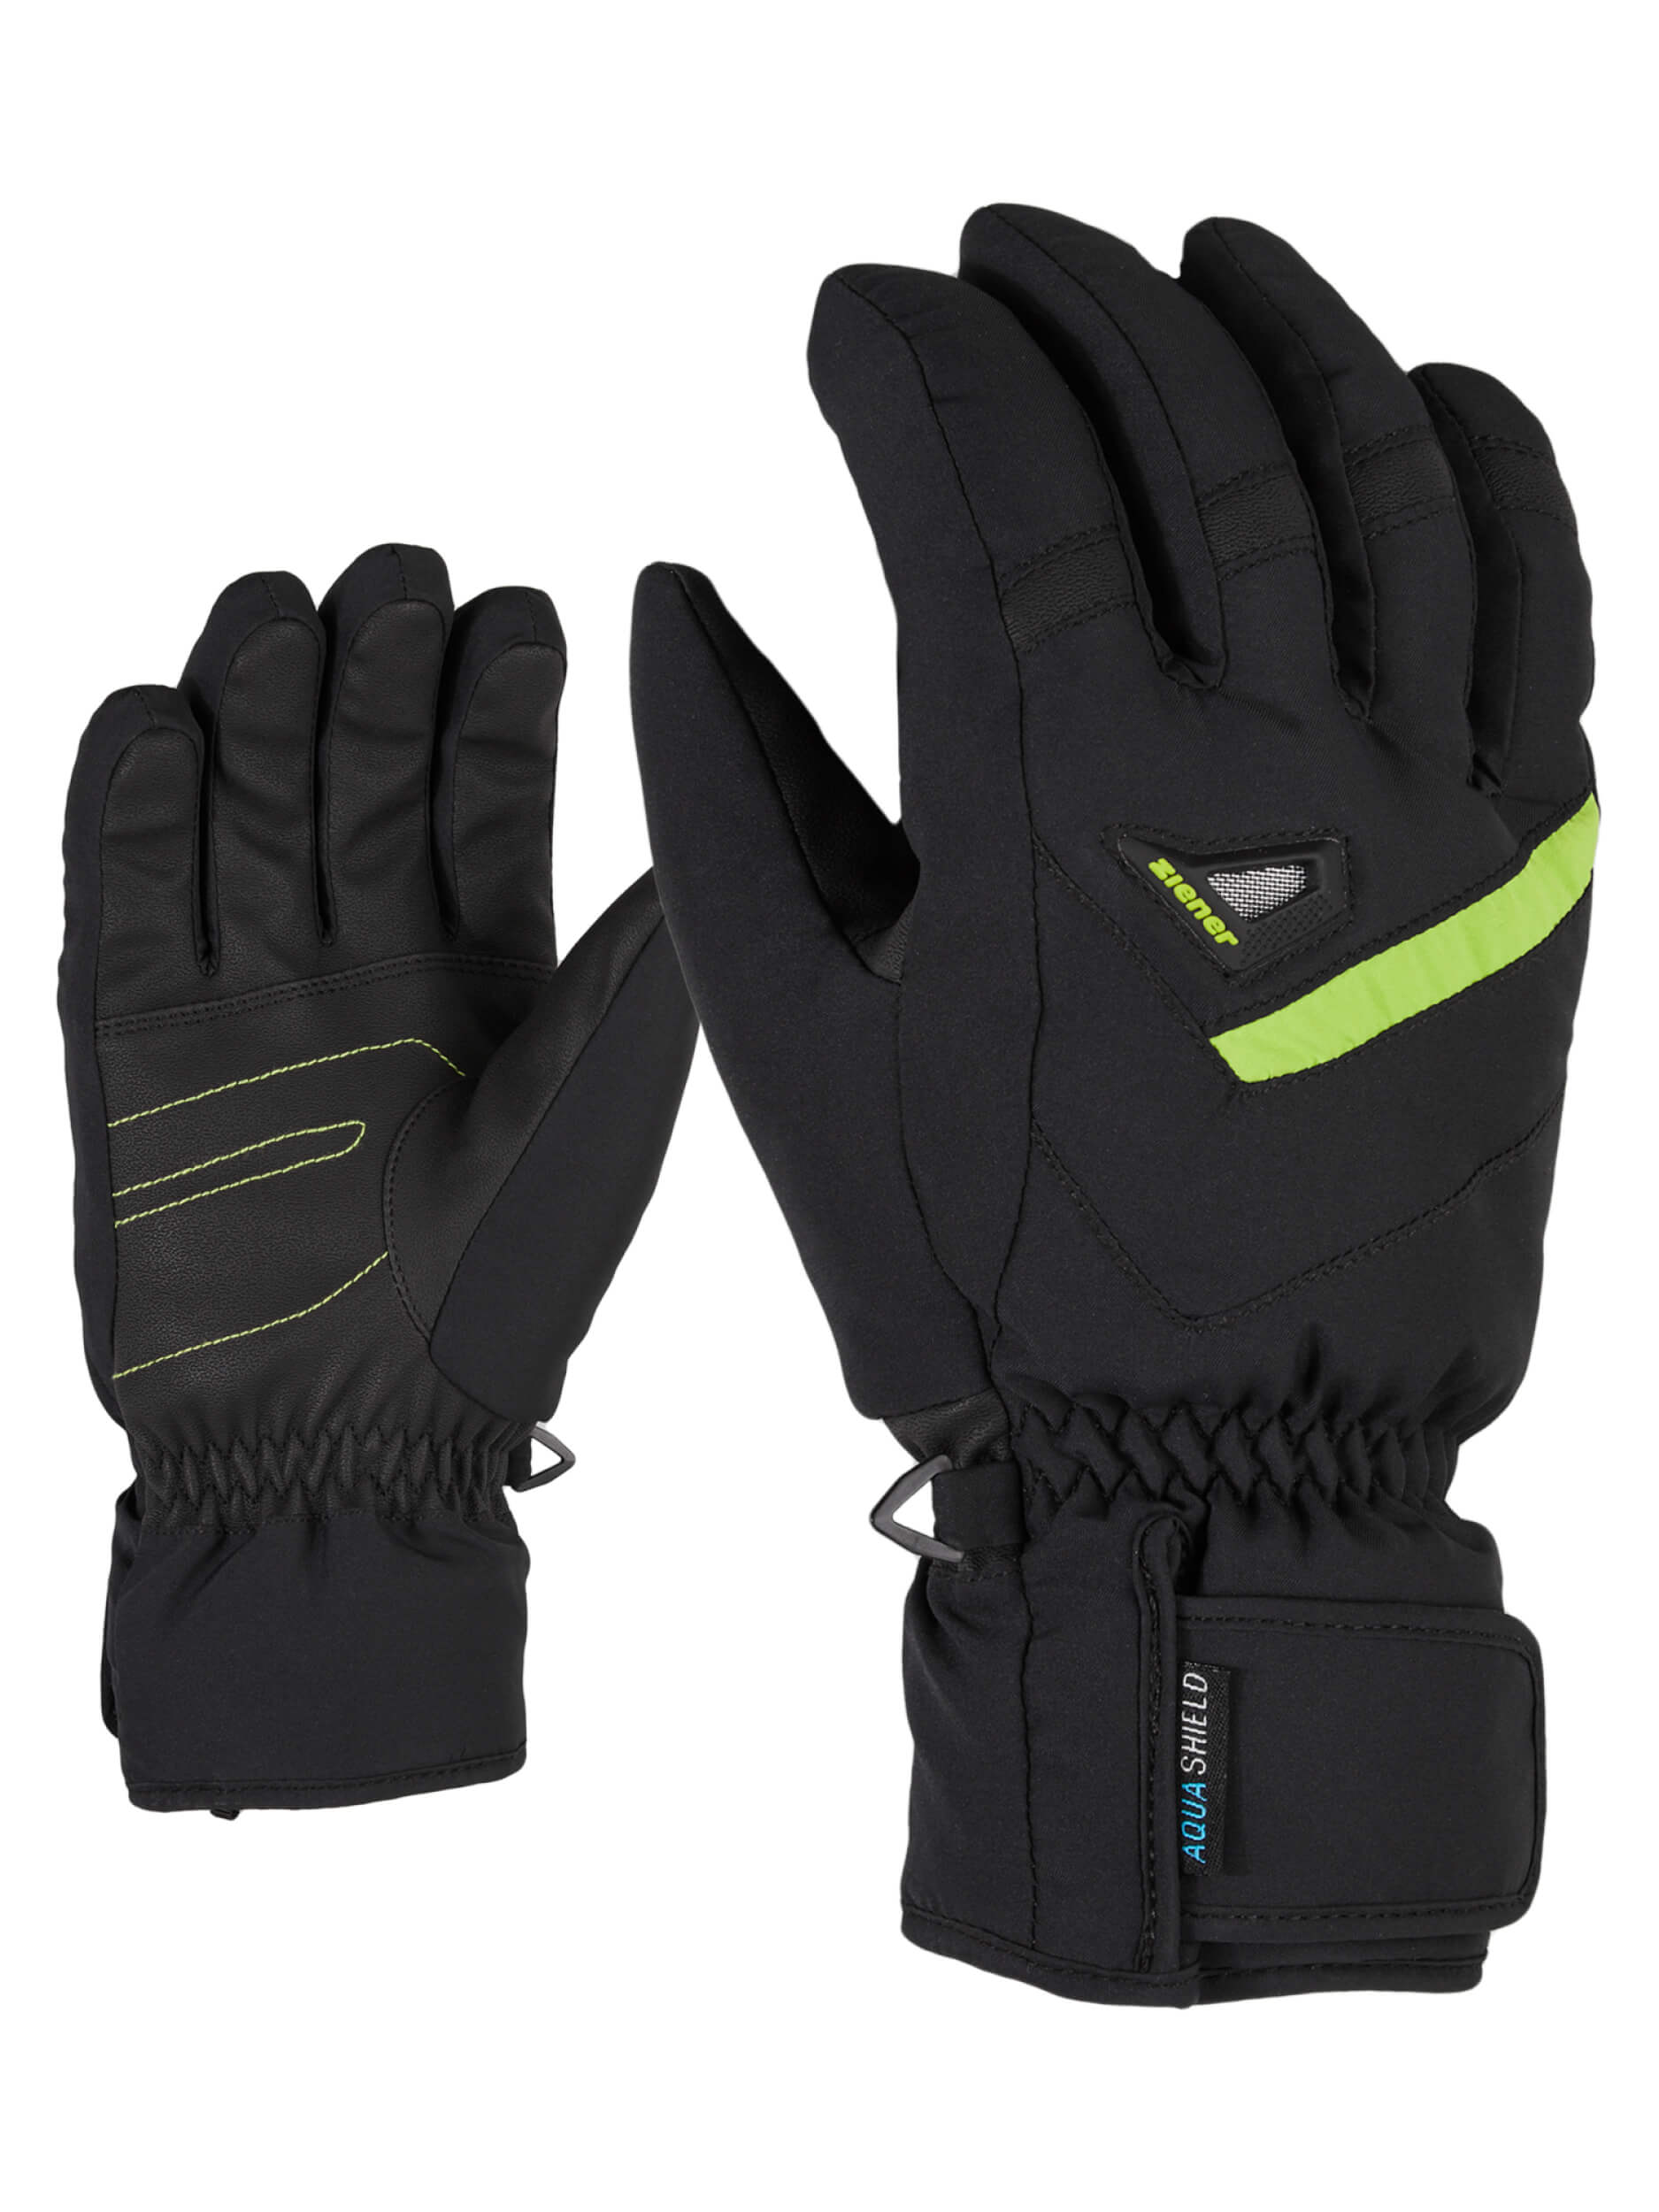 ZIENER Ski-Handschuhe Gary AQUASHIELD schwarz grün 56812